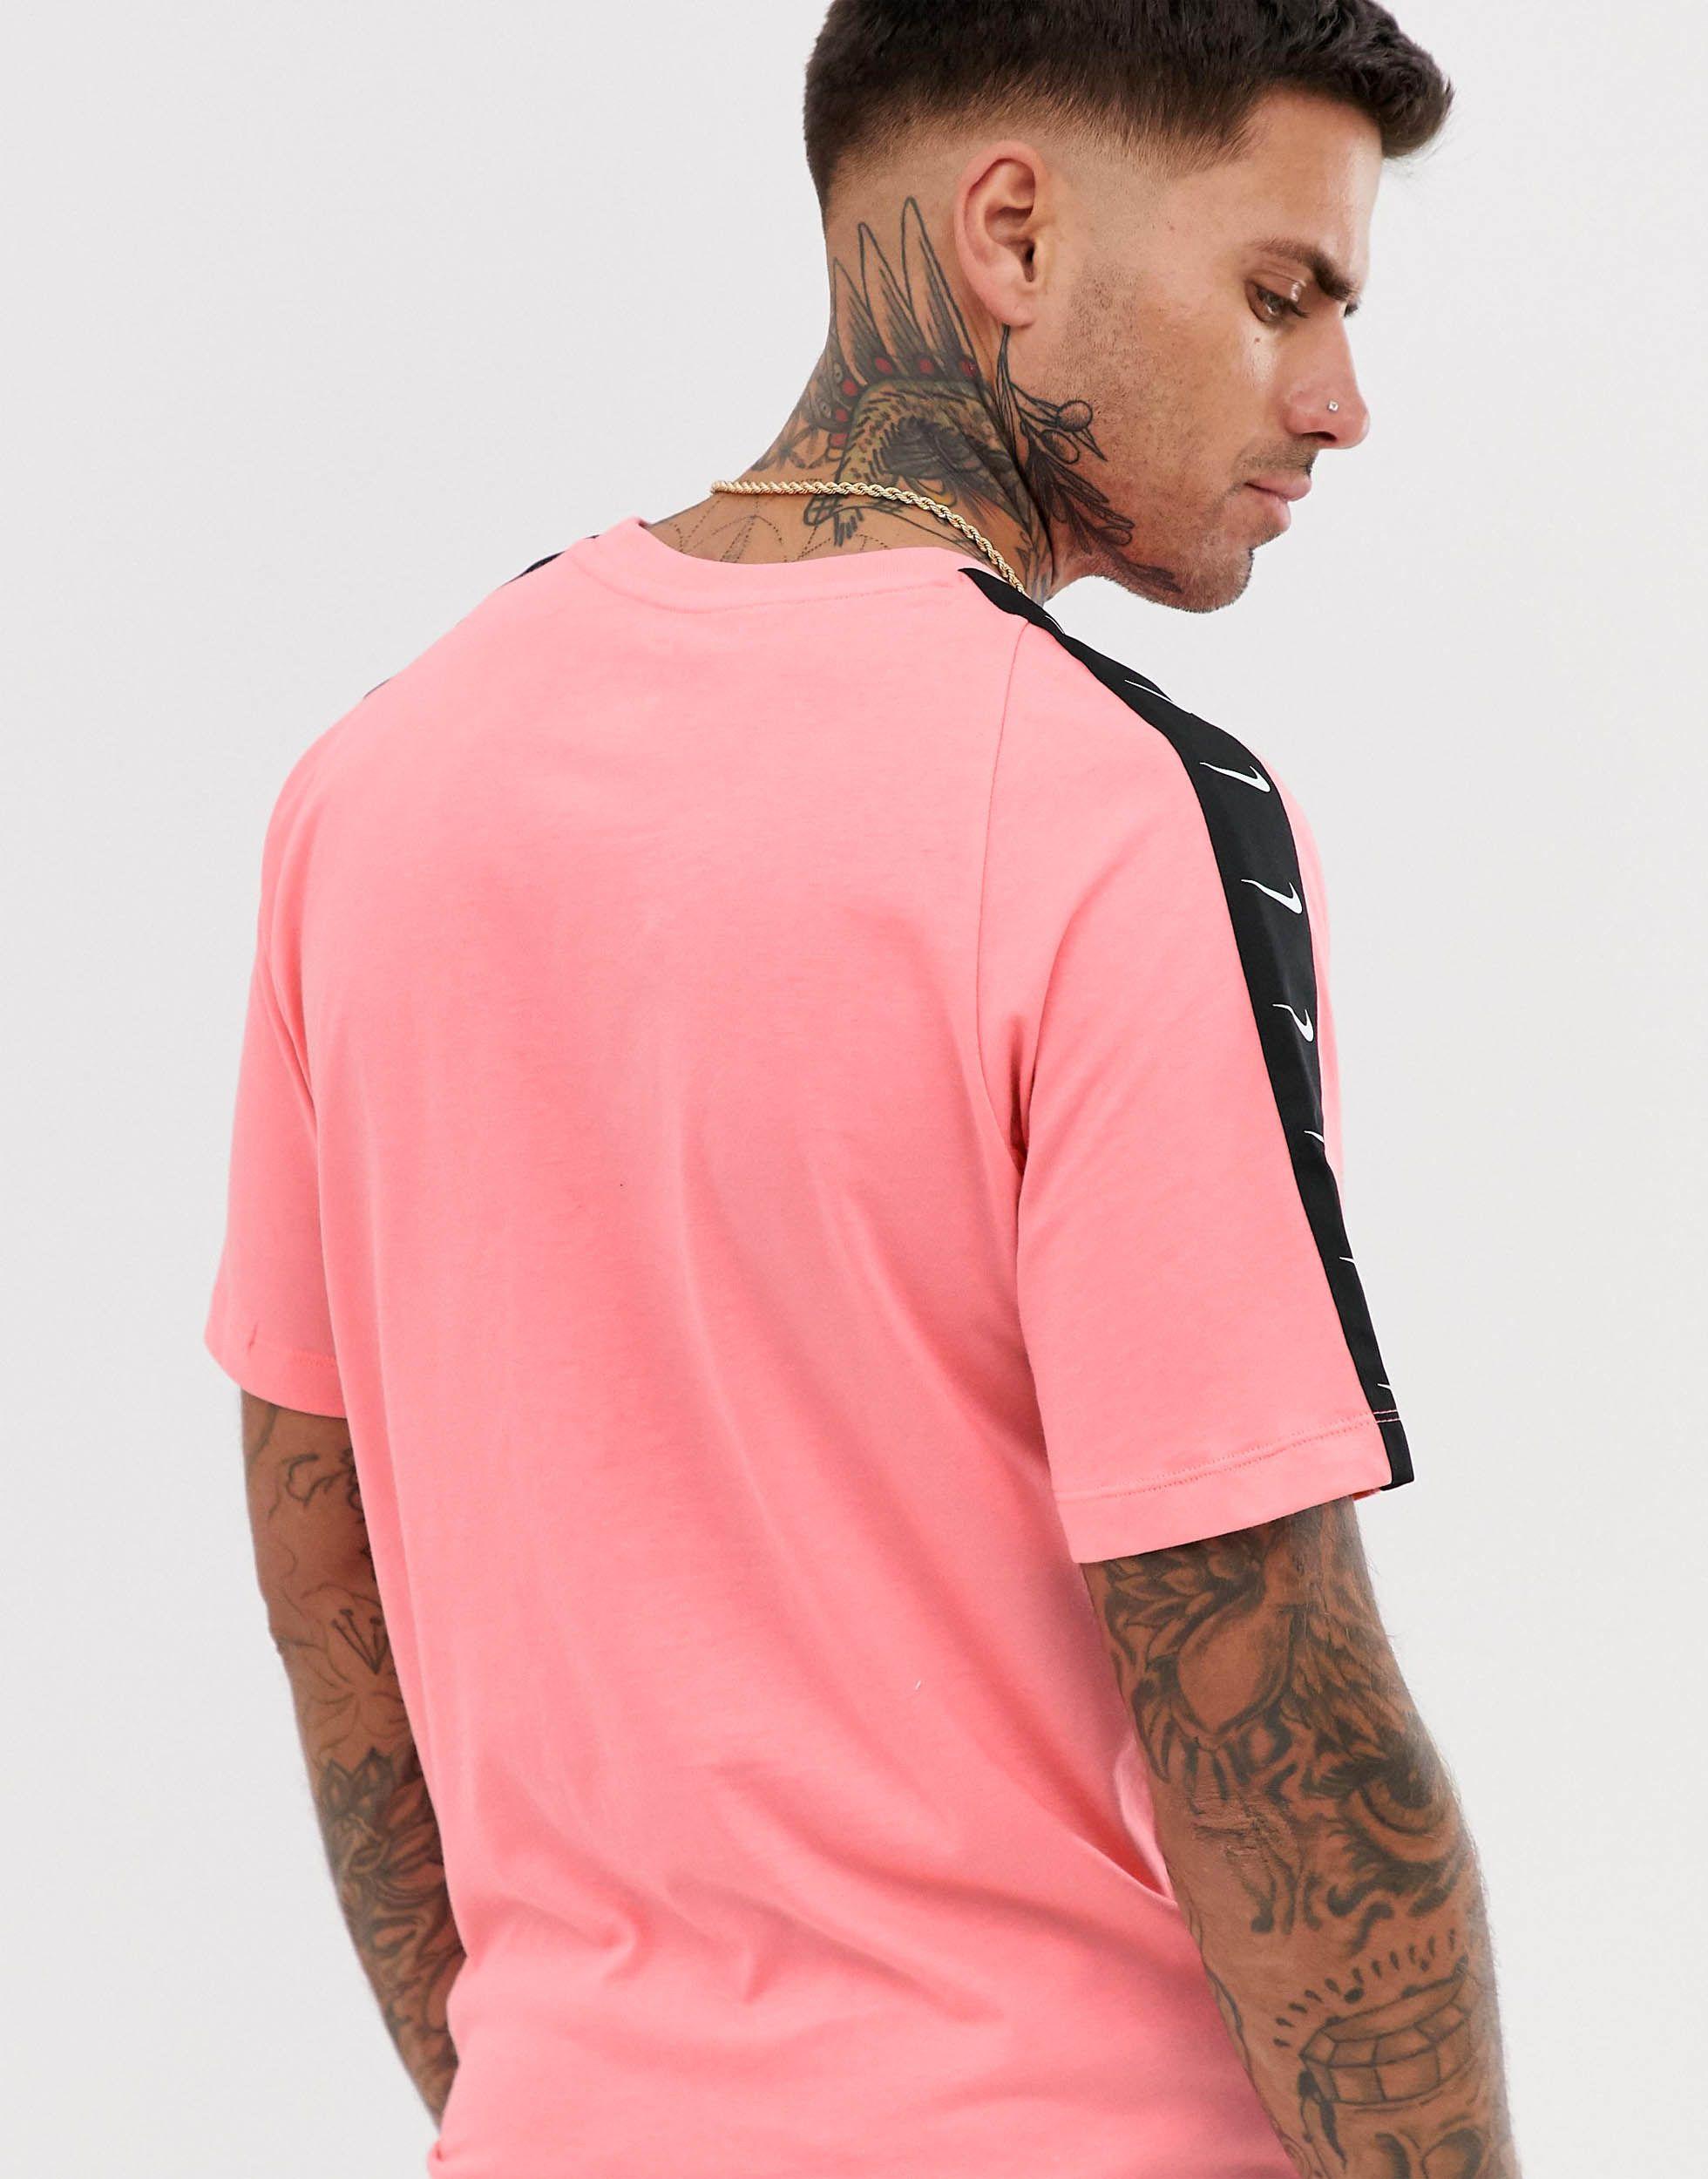 Cielo Productividad atributo Camiseta rosa con cinta del logo Nike de hombre de color Rosa | Lyst